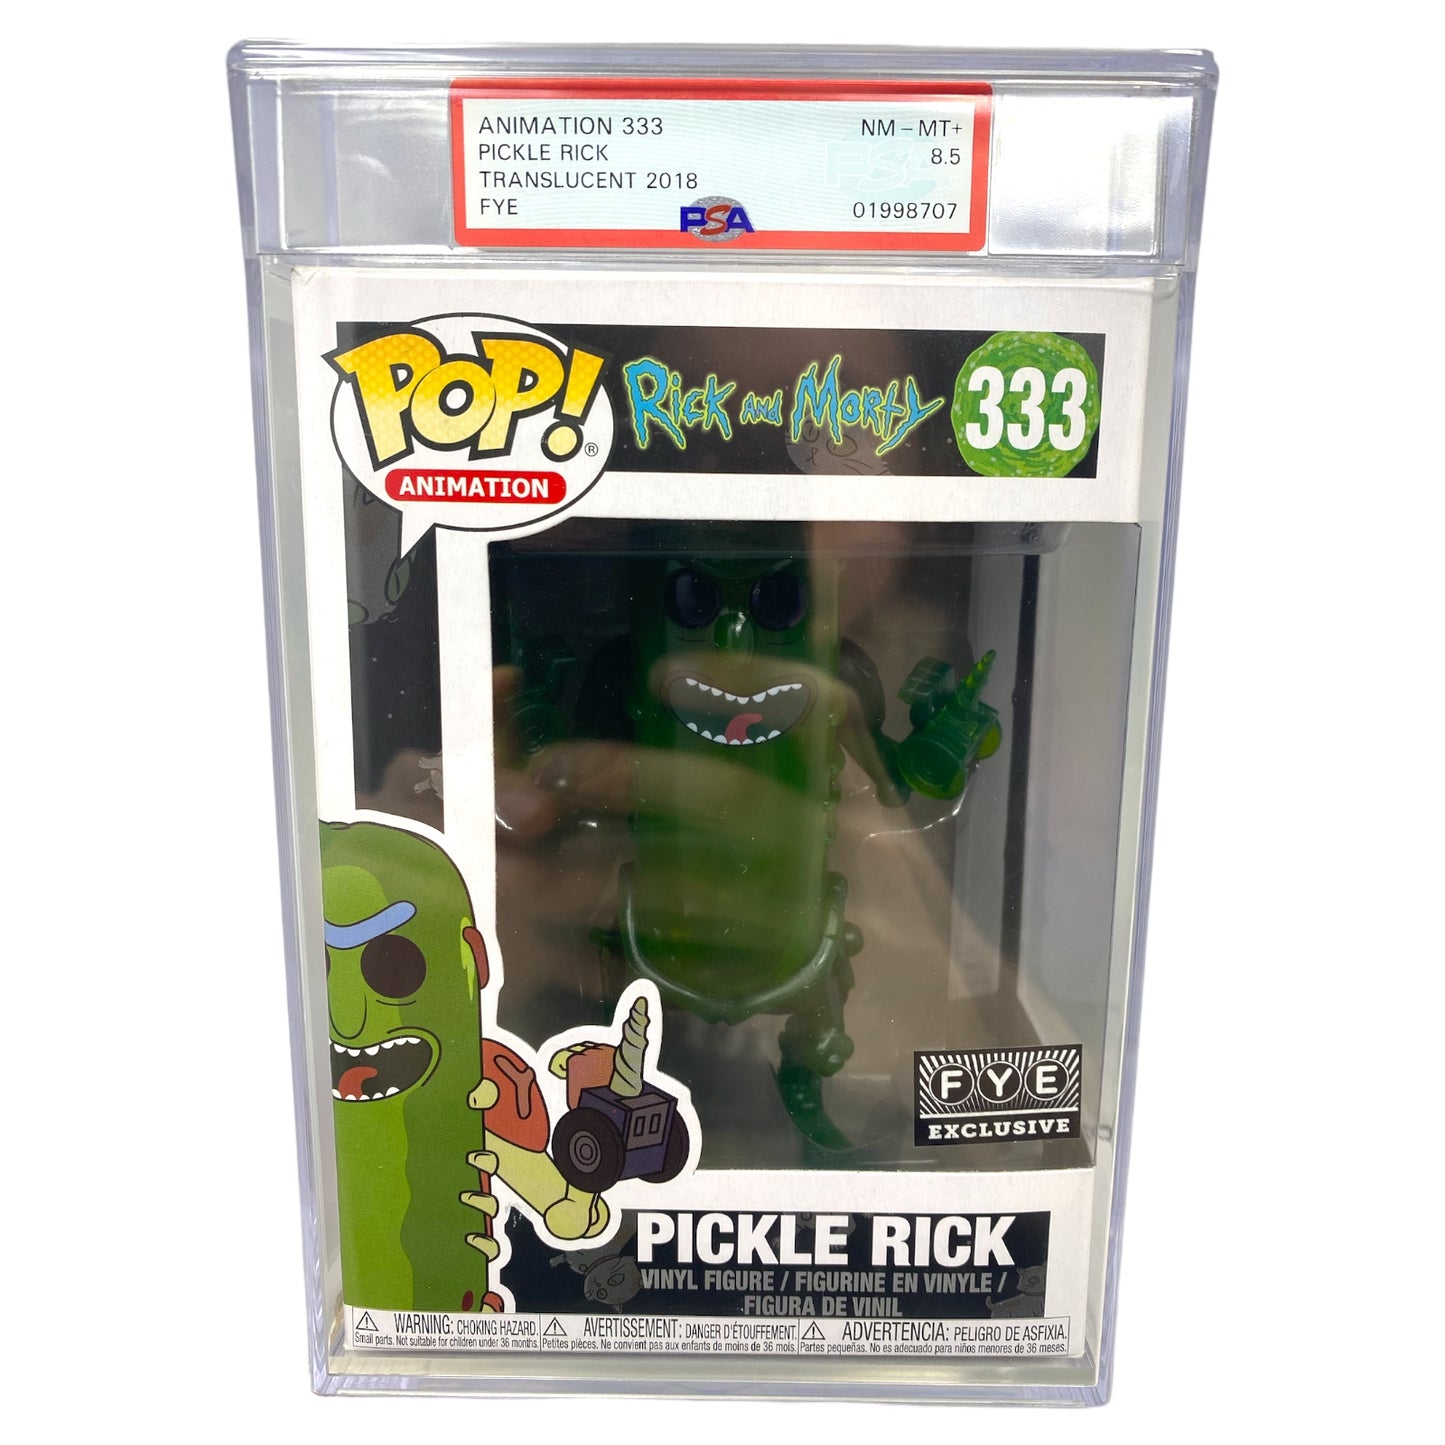 PSA Grade 8.5 2018 Translucent Pickle Rick 333 FYE